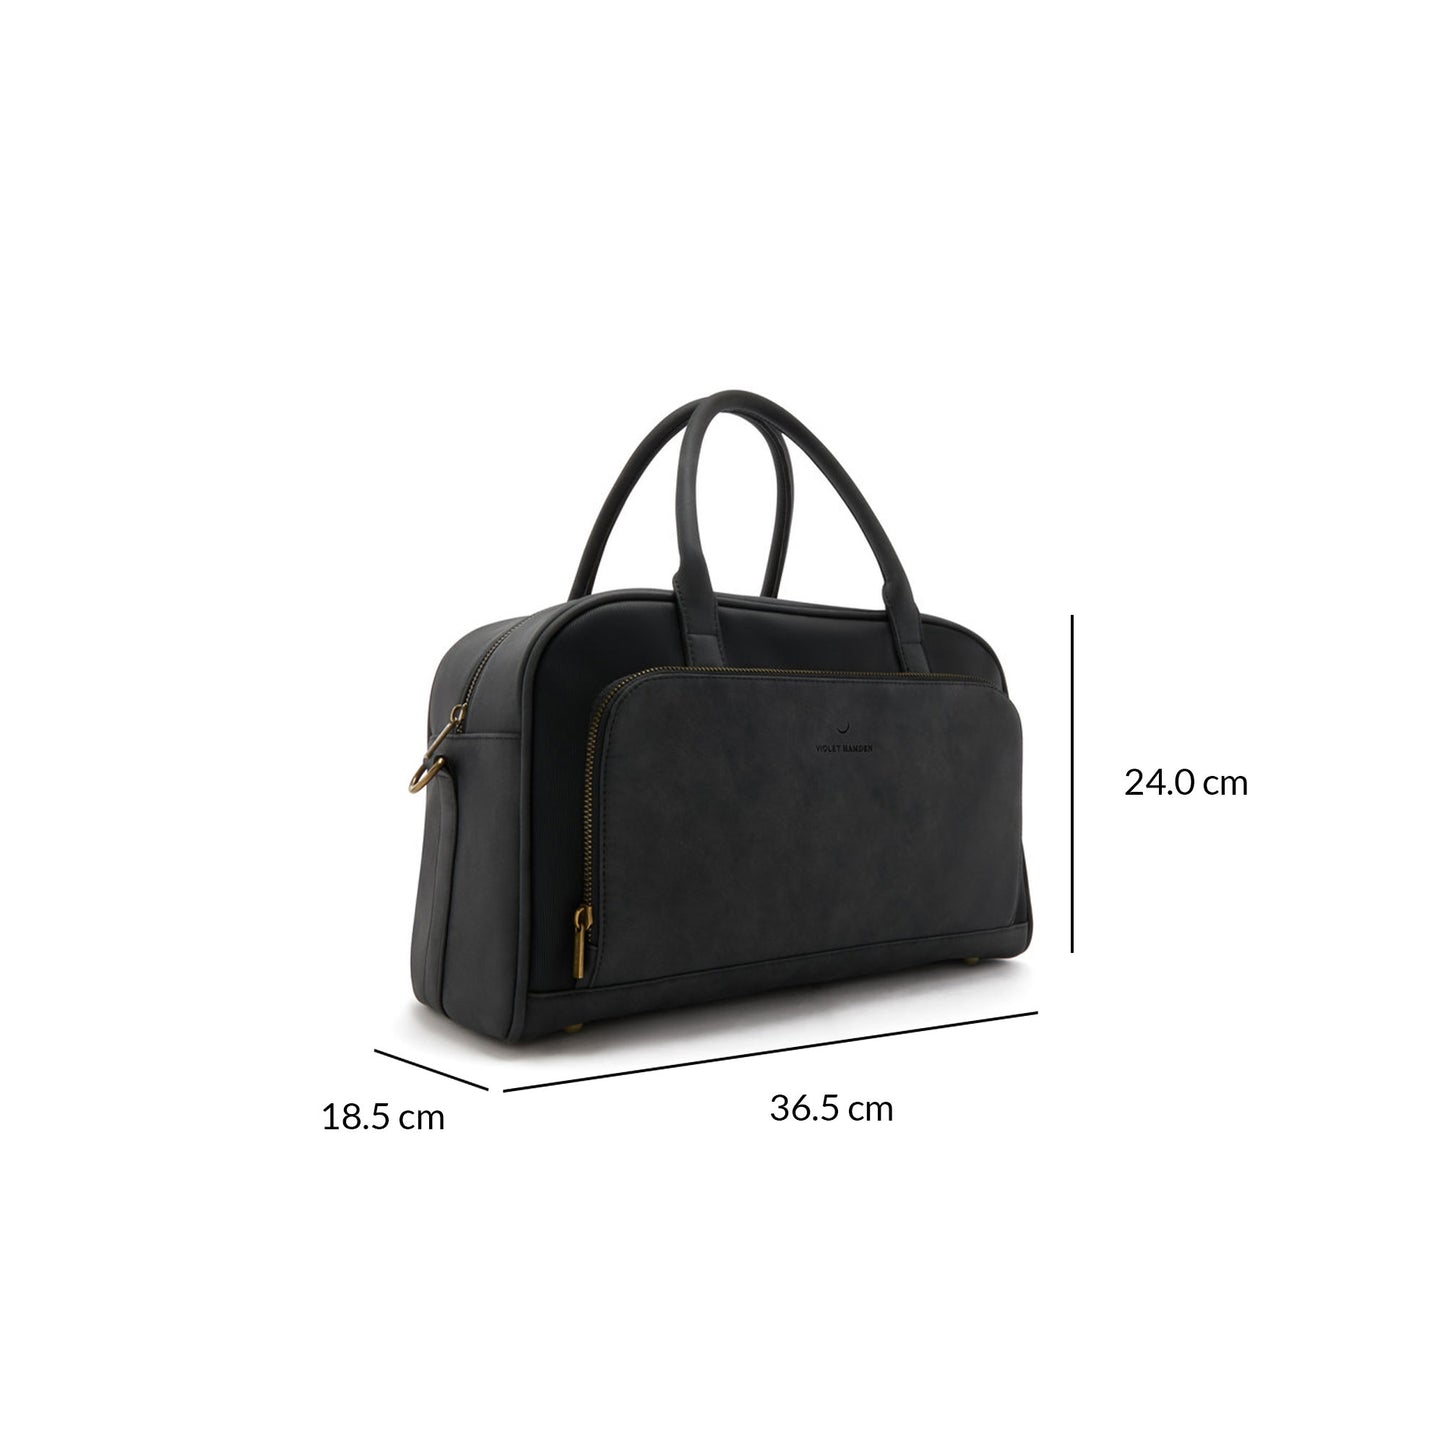 Essential Bag schwarze Handtasche